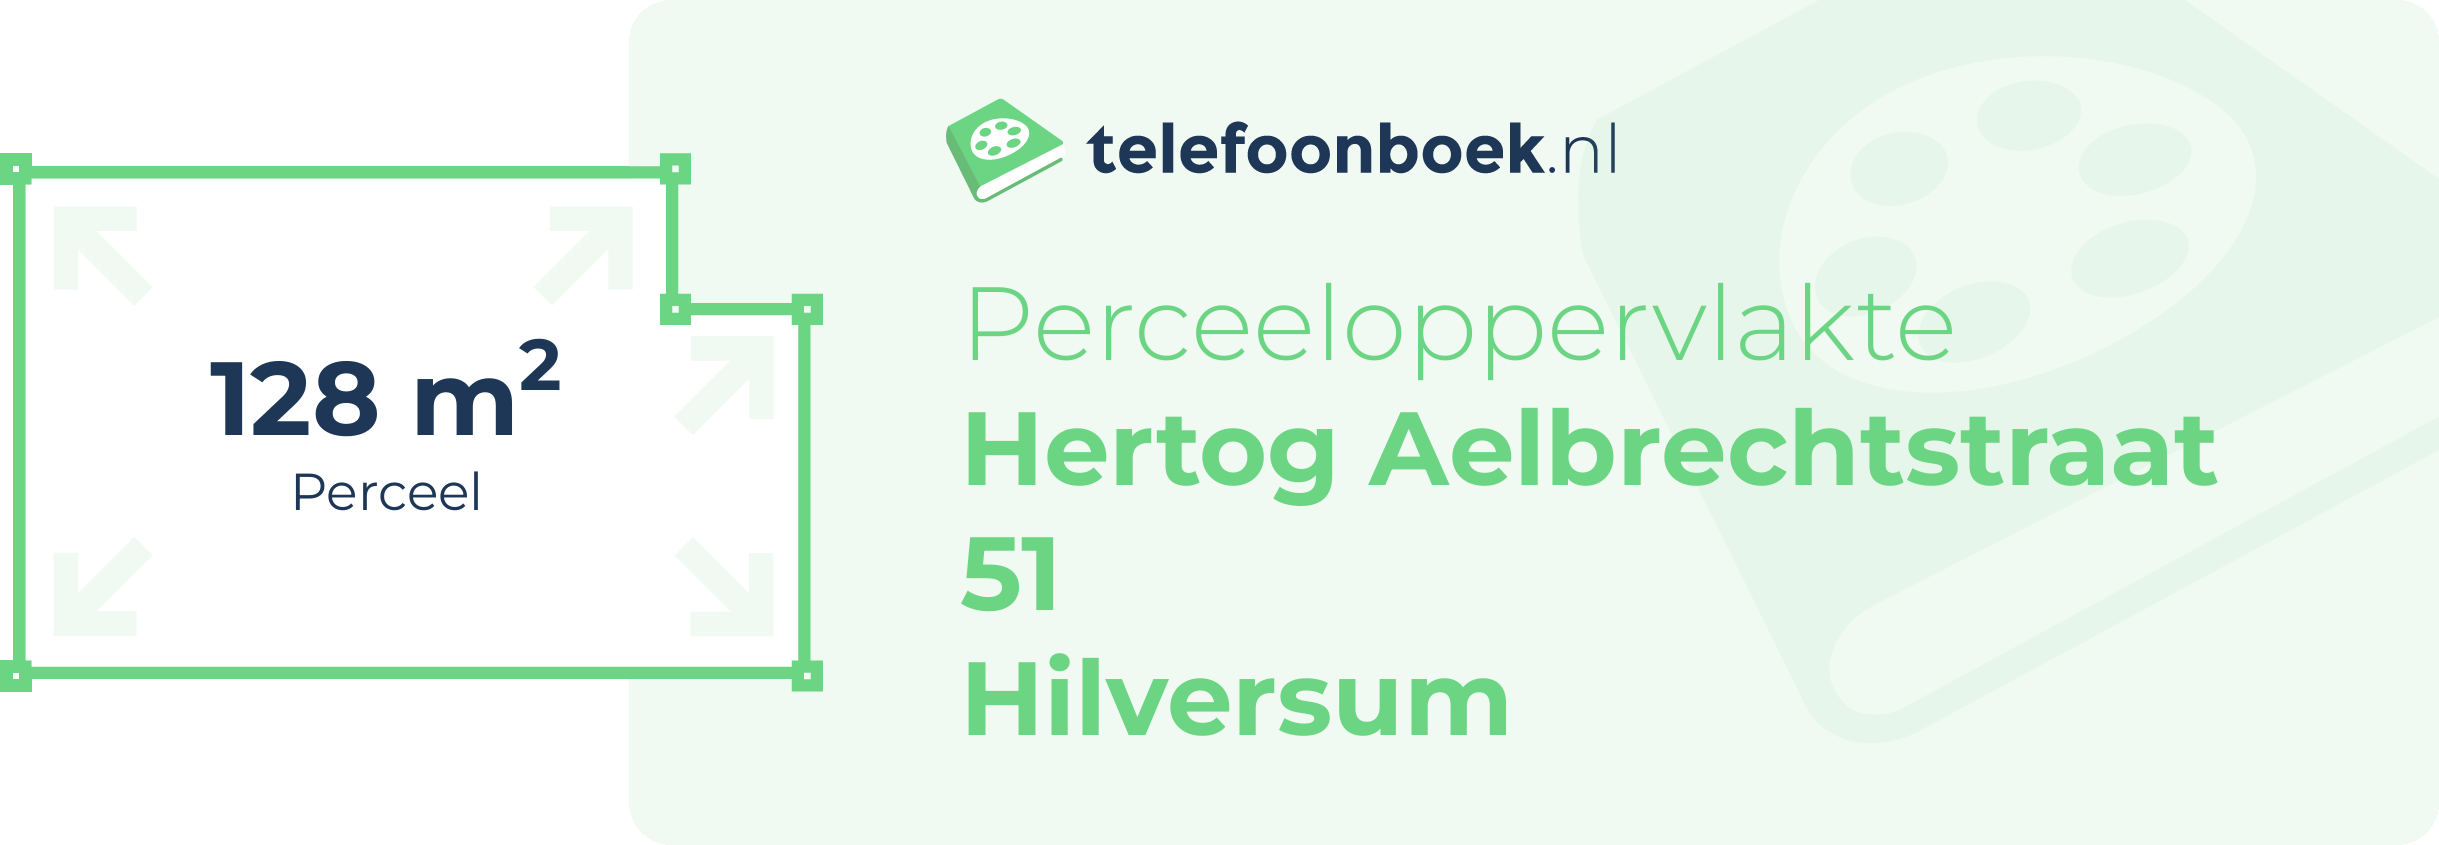 Perceeloppervlakte Hertog Aelbrechtstraat 51 Hilversum